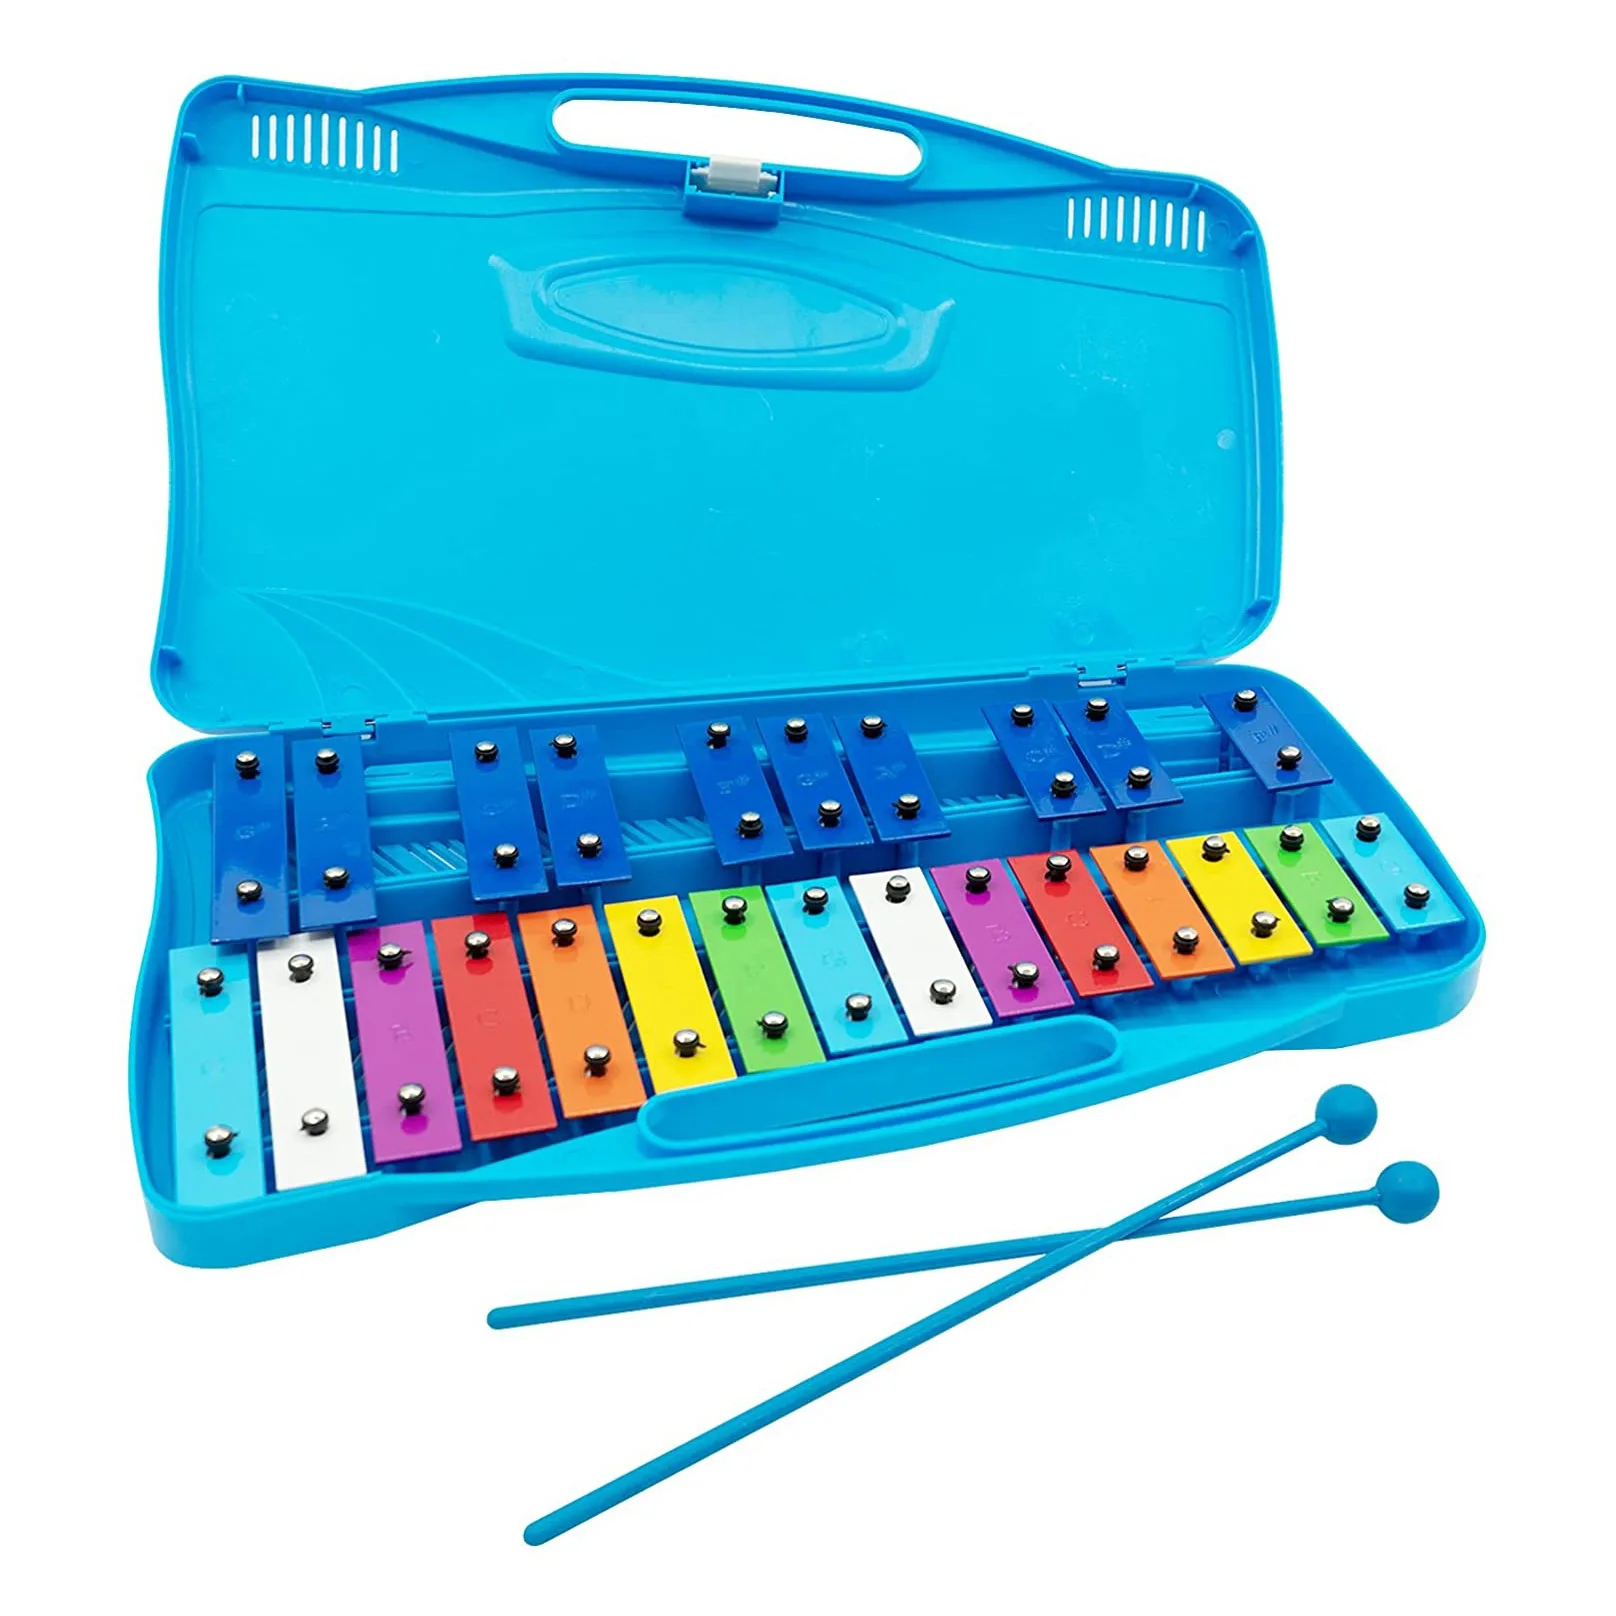 

Ксилофон 25 Note с чехлом, красочная музыкальная игрушка, идеально настроенный инструмент для взрослых, детей и малышей, синий